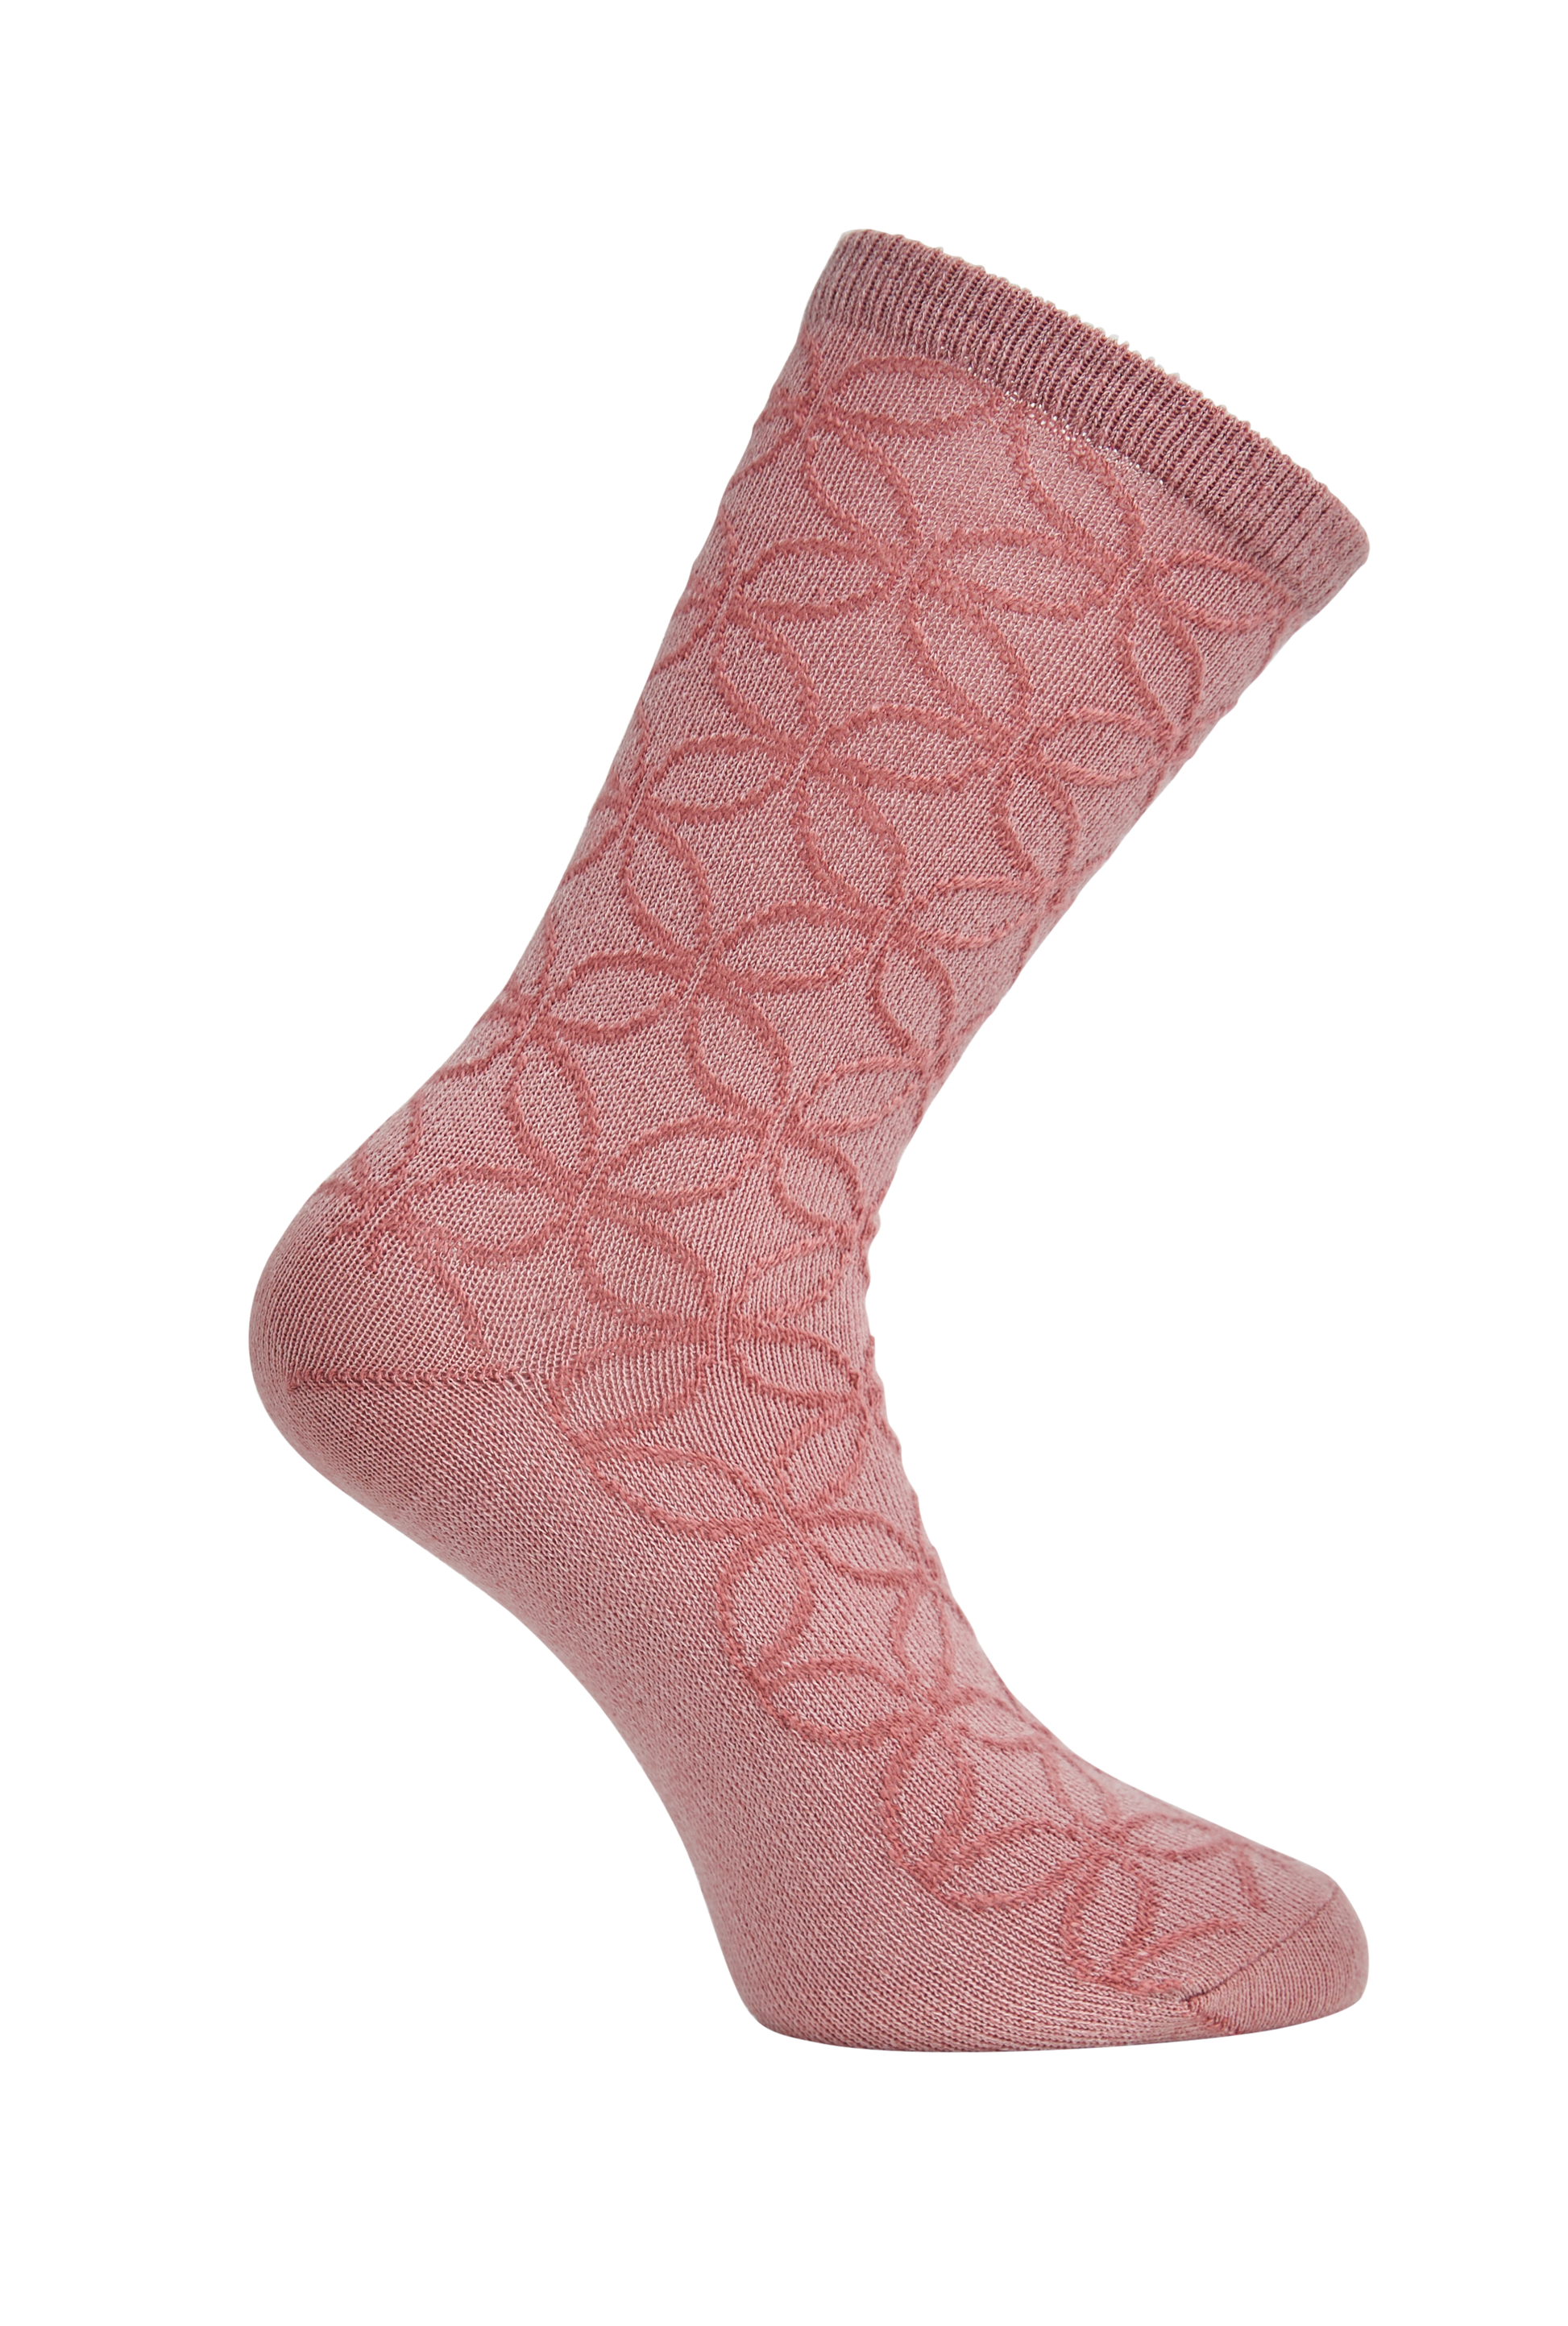 Side heel of Simon de Winter Women's Wool Crew Socks in Smokey Rose/Cinnamon